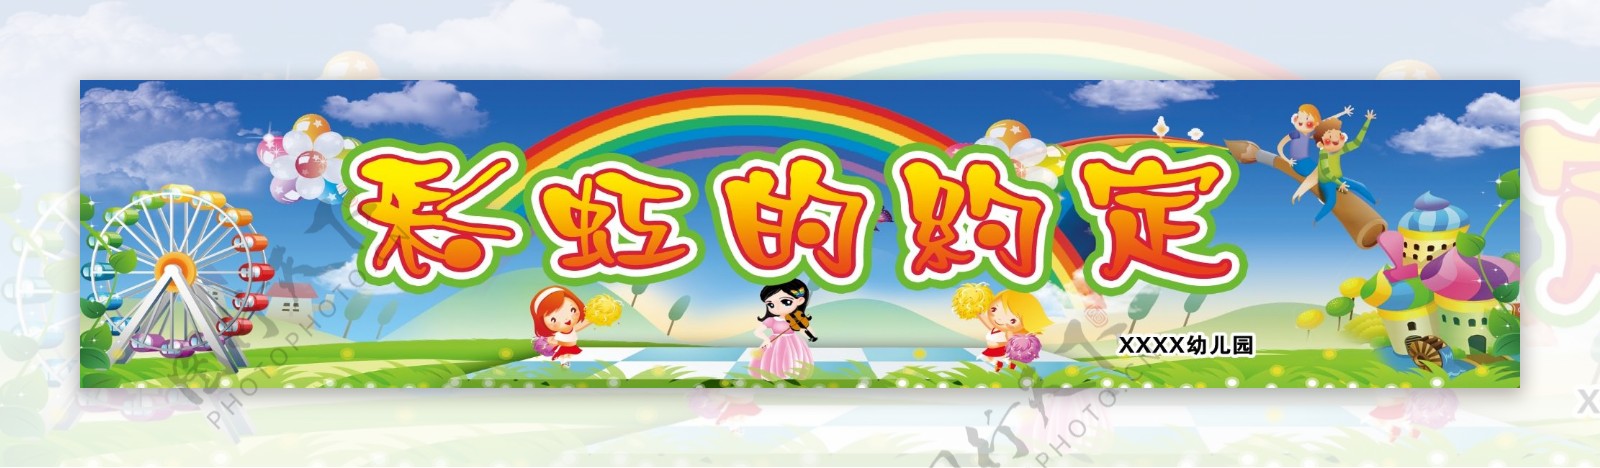 儿童节彩虹的约定图片